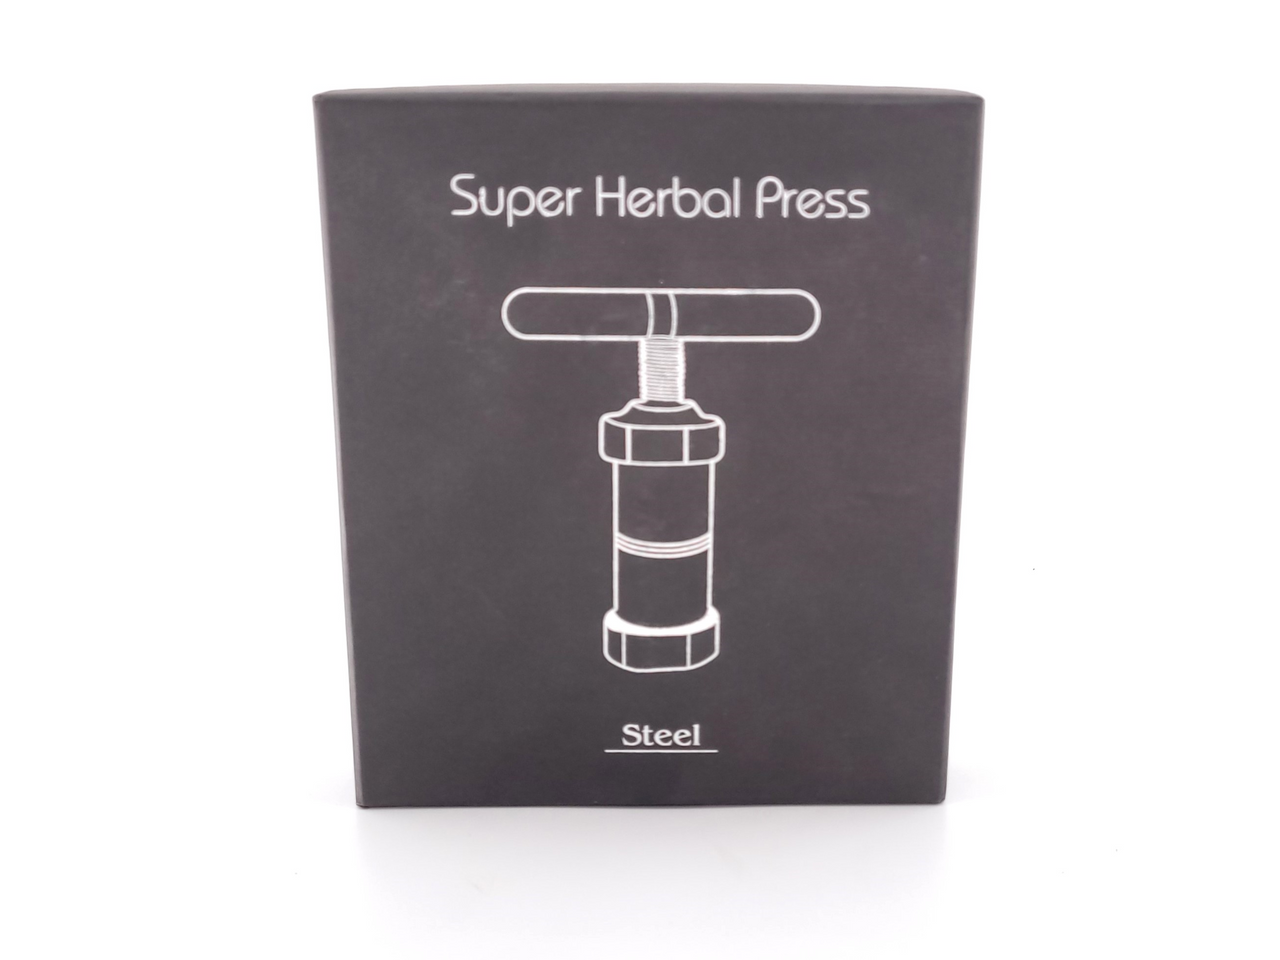 Super Herbal Press